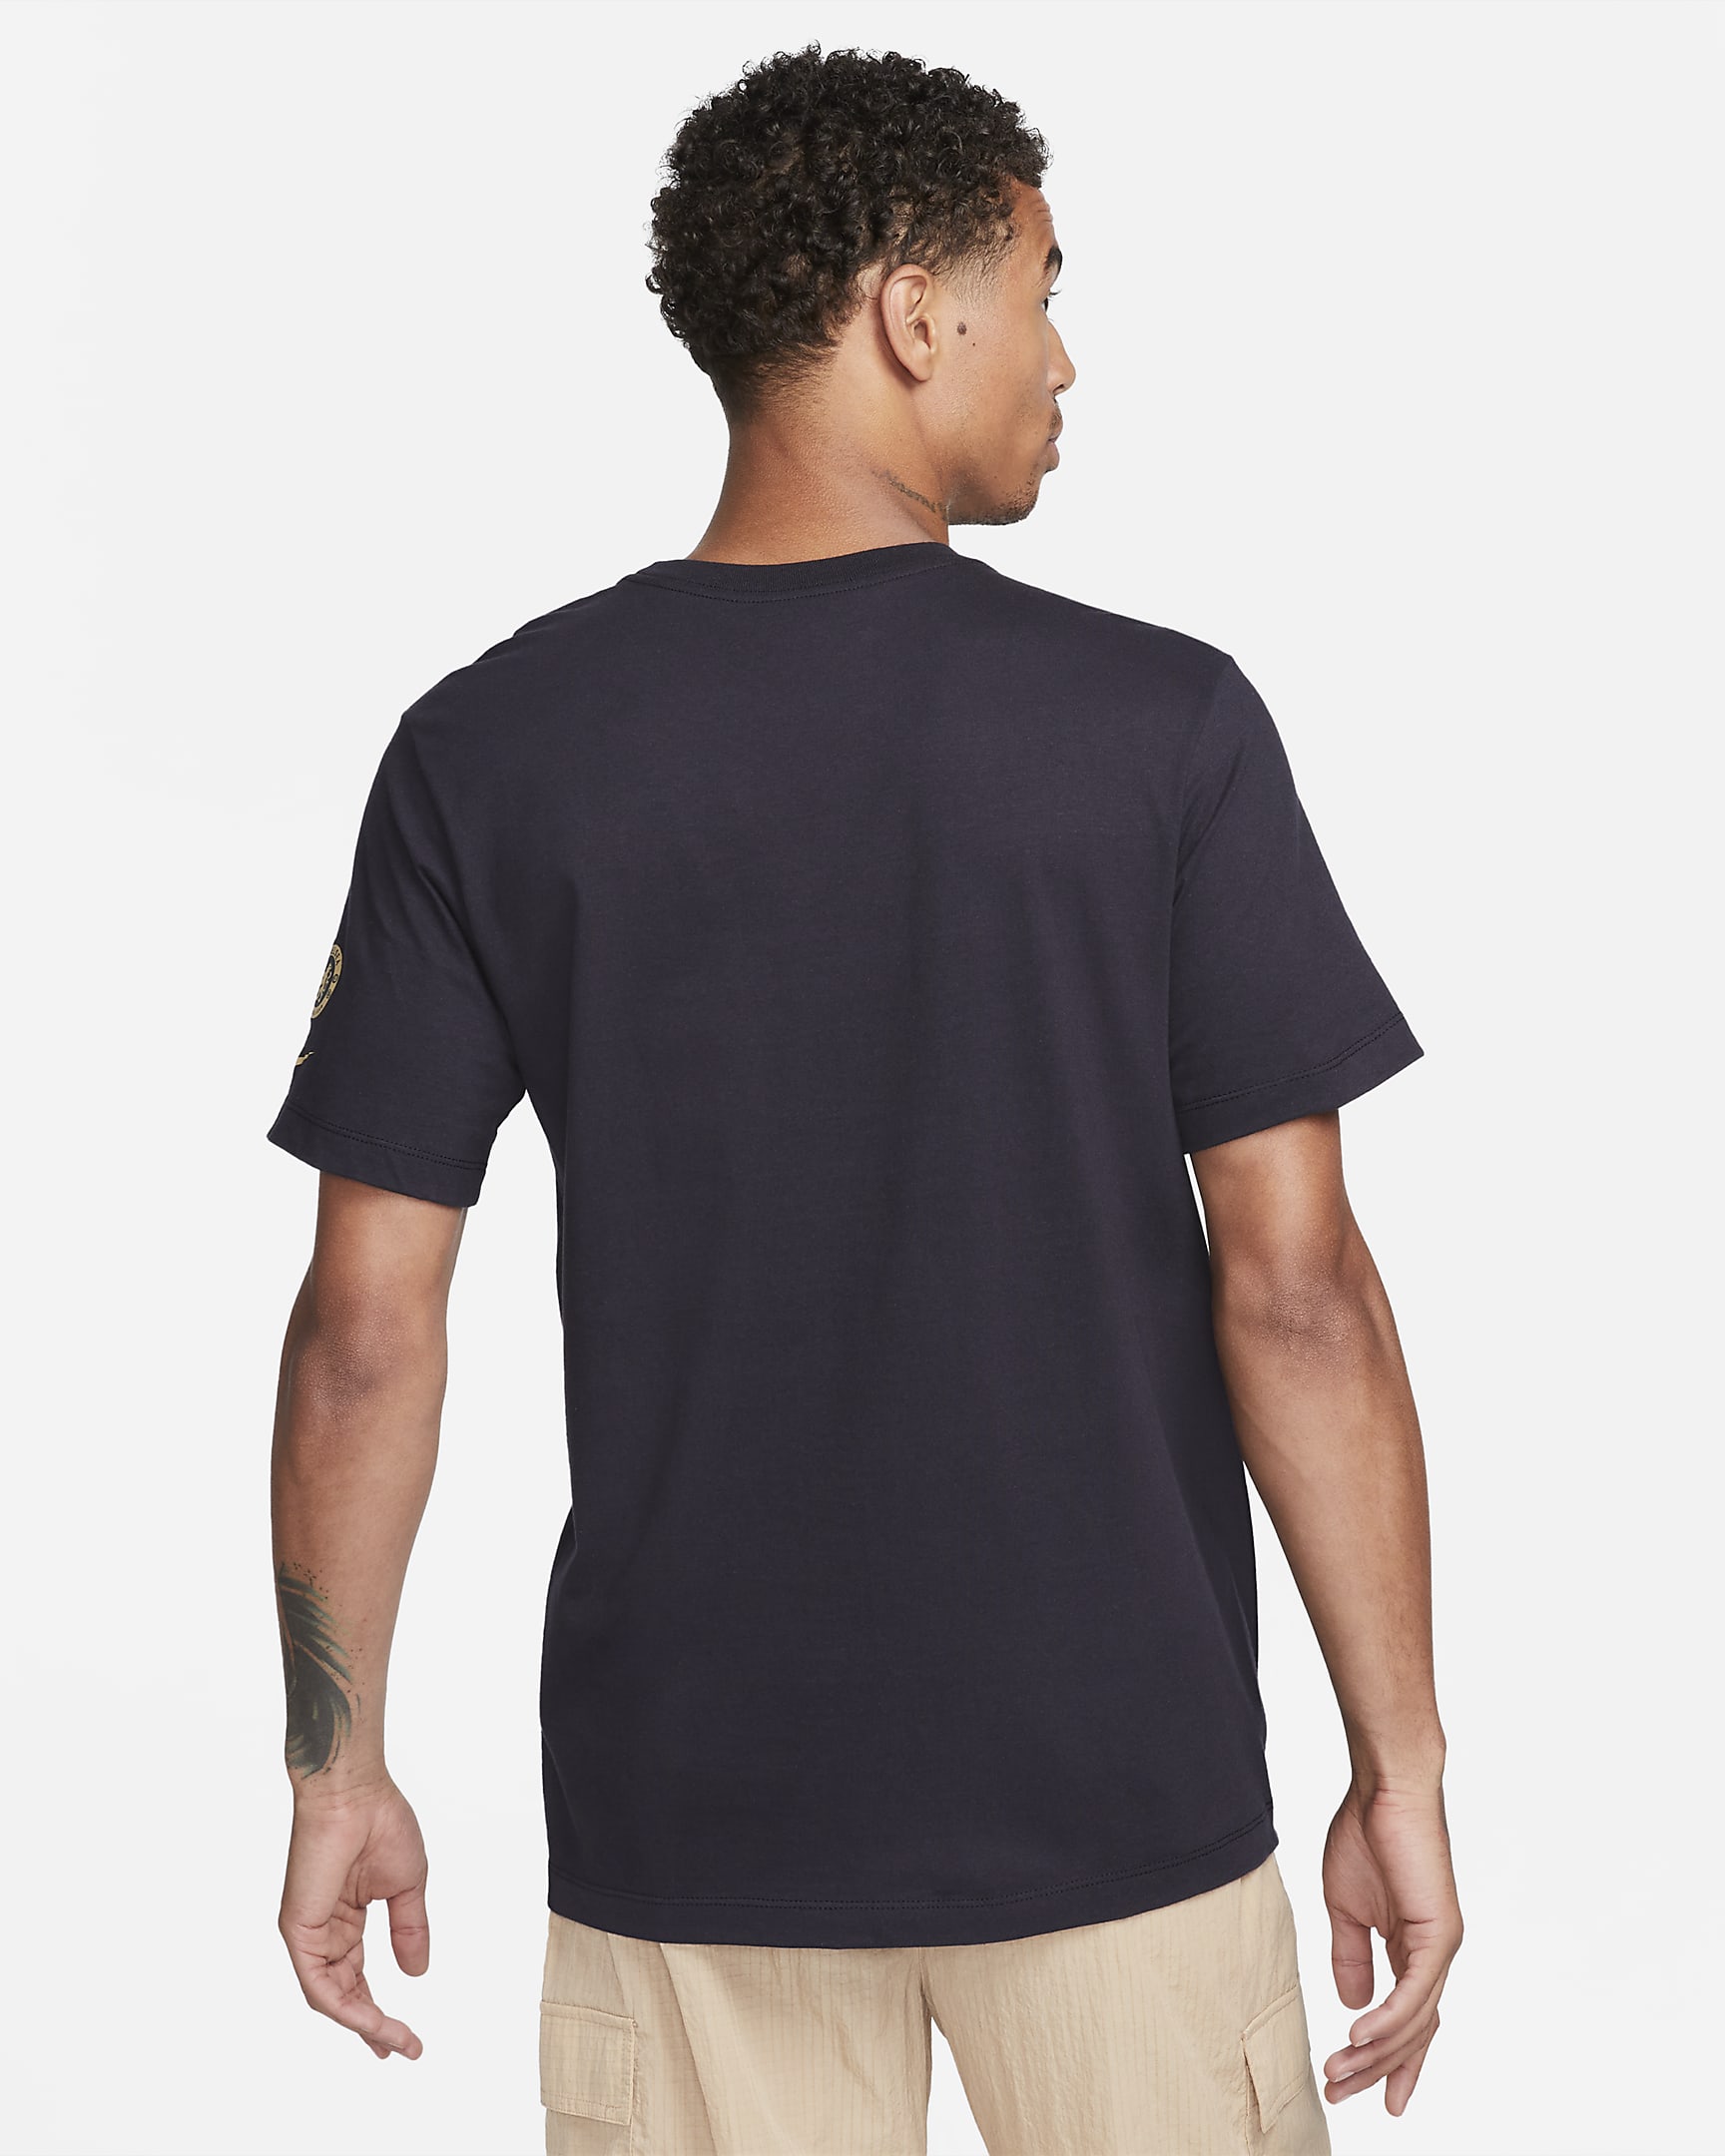 Chelsea FC JDI Men's Nike T-Shirt. Nike.com